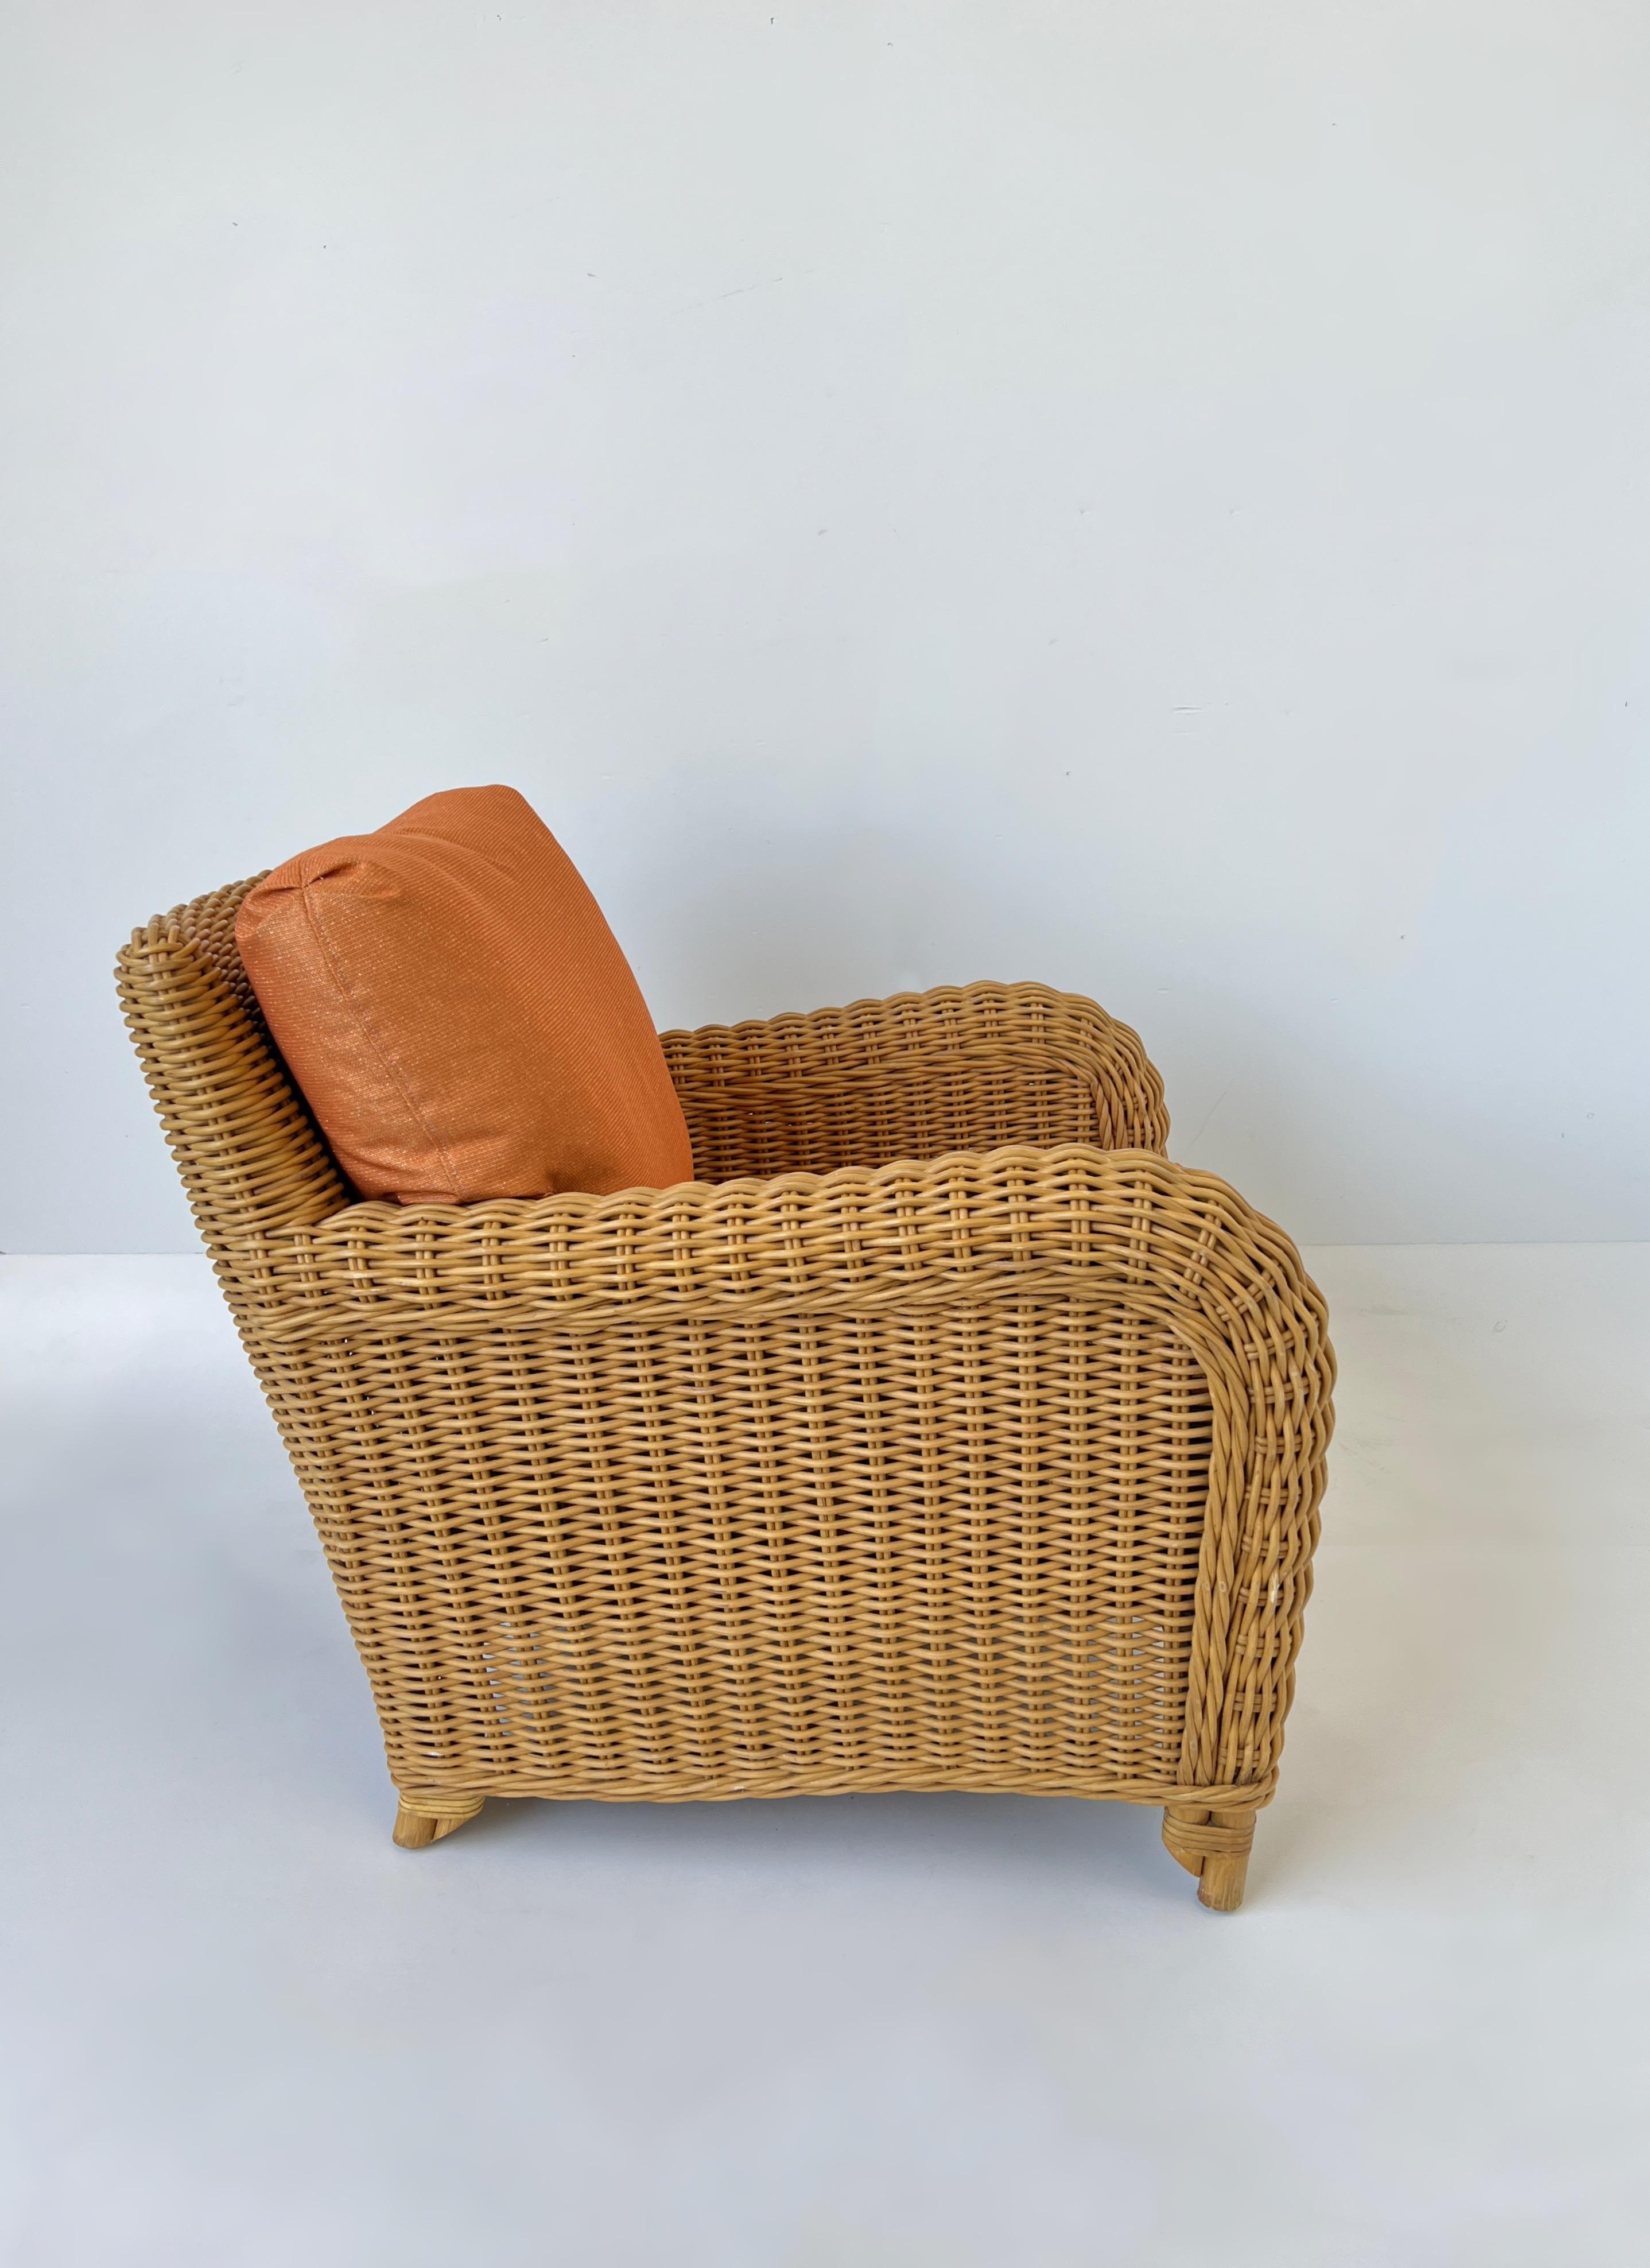 chaise longue en rotin et orange des années 1980 par John Hutton pour Donghia. 
Le cadre est en état d'origine, il présente une usure mineure conforme à l'âge. 
Les coussins ont été récemment récupérés dans un orange avec du fil d'or et sont remplis